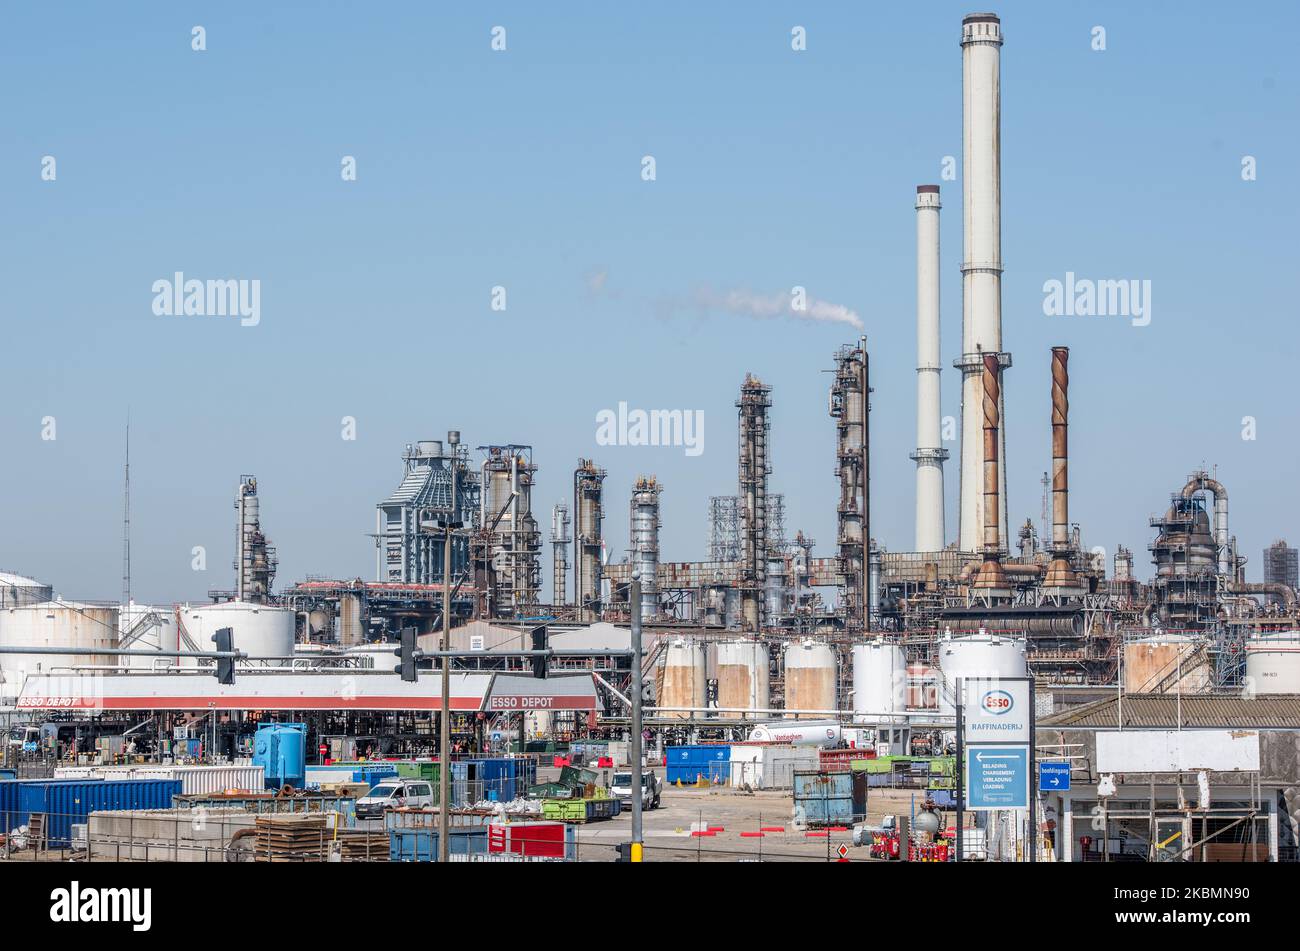 Una visione generale di una raffineria di Essol Oil ad Anversa - Belgio il 21 aprile 2020. I prezzi del petrolio NEGLI STATI UNITI sono crollato in territorio negativo nelle ultime settimane,per la prima volta nella storia come l'evaporazione della domanda causata dalla pandemia di coronavirus (COVID-19) in tutto il mondo, Ha lasciato il mondo inondato di petrolio e non abbastanza capacità di stoccaggio. Esso raffinerie processi diversi gradi di petrolio greggio che variano da leggero a basso tenore di zolfo a pesante ad alto tenore di zolfo. Il petrolio greggio viene fornito attraverso il gasdotto Rotterdam-Anversa, di proprietà della ExxonMobil. (Foto di Jonathan Raa/NurPhoto) Foto Stock